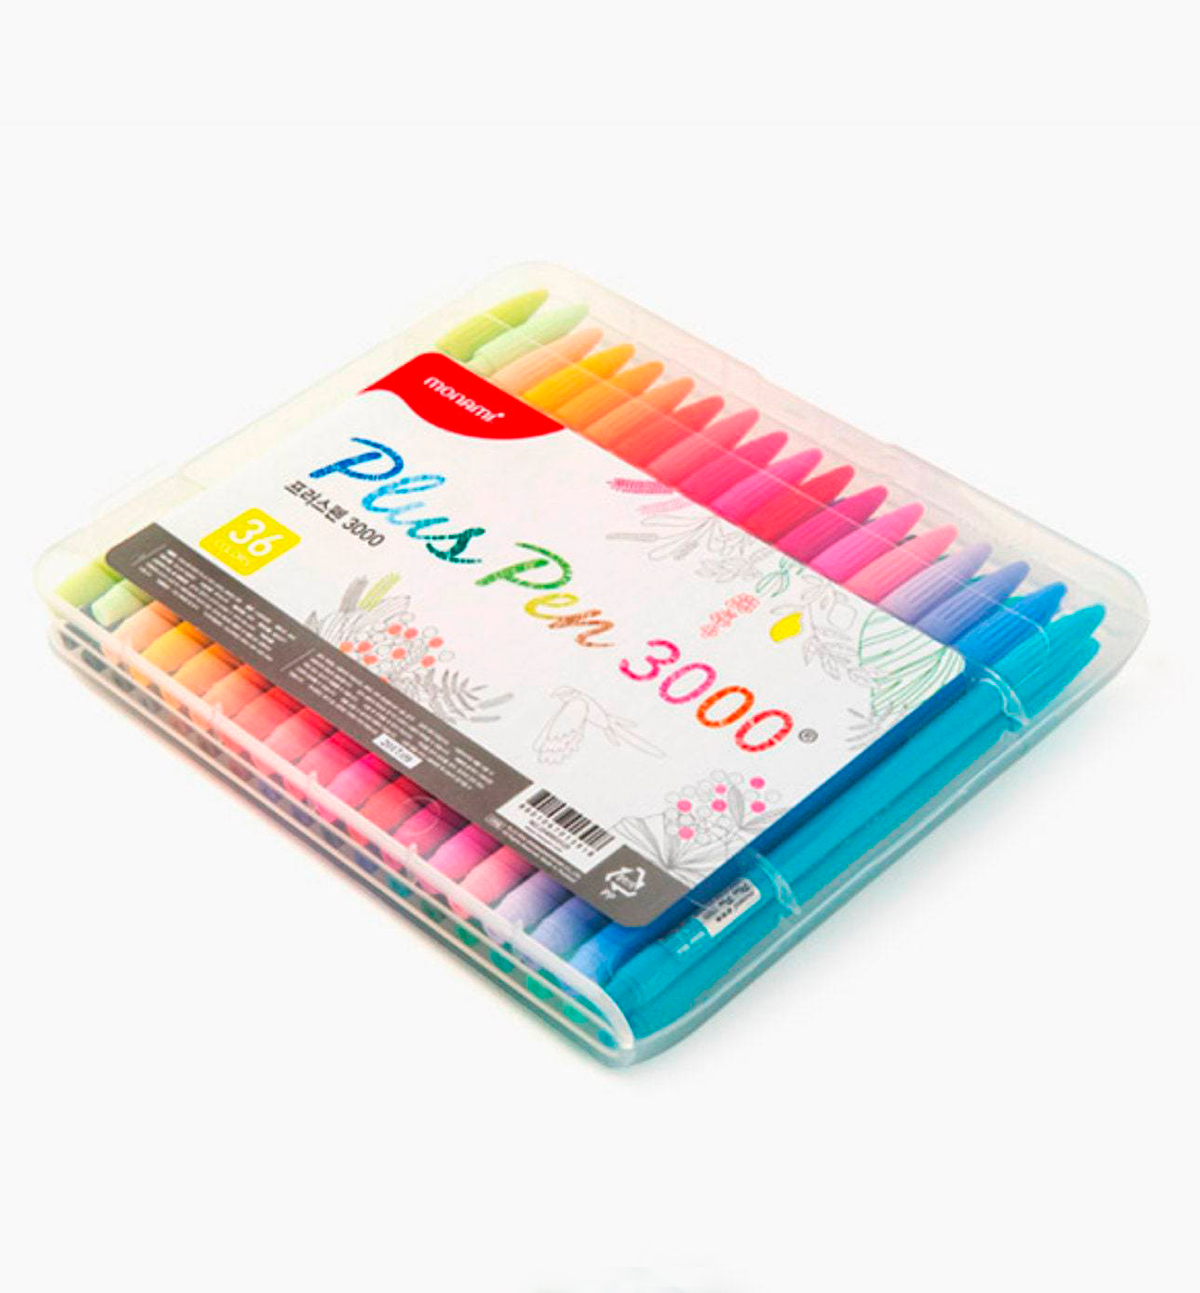 36 Color Plus Pens